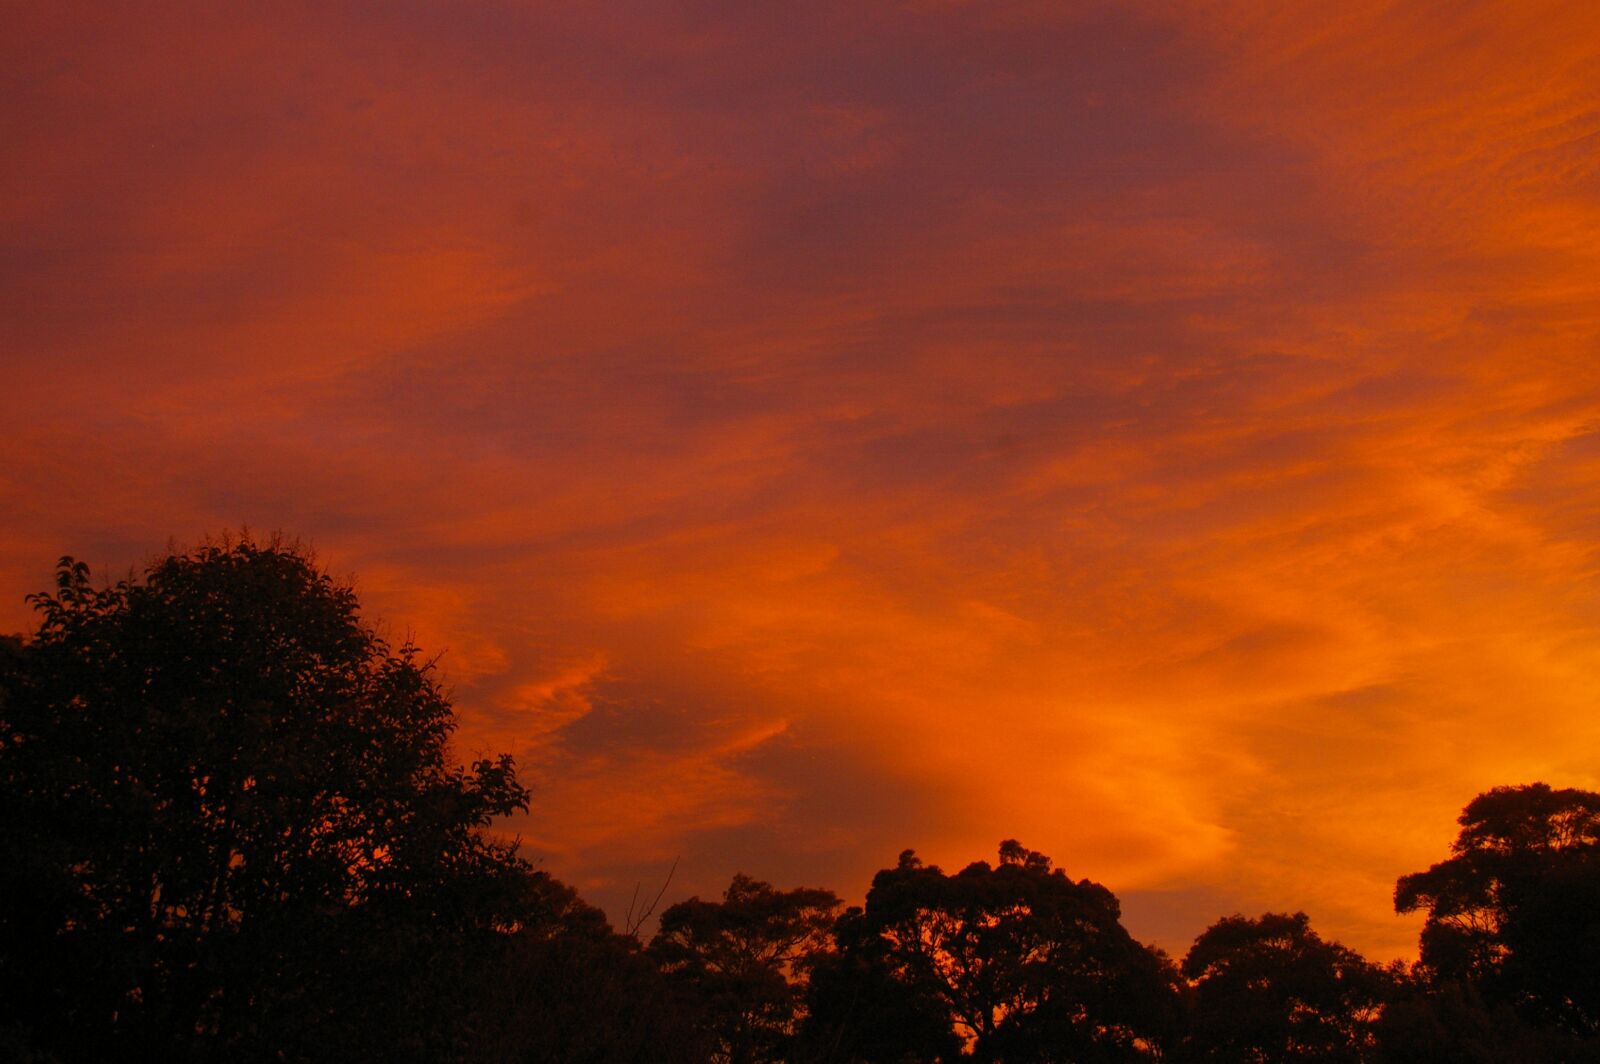 Pentax K100D sample photo. Sunset, sky, nature photography